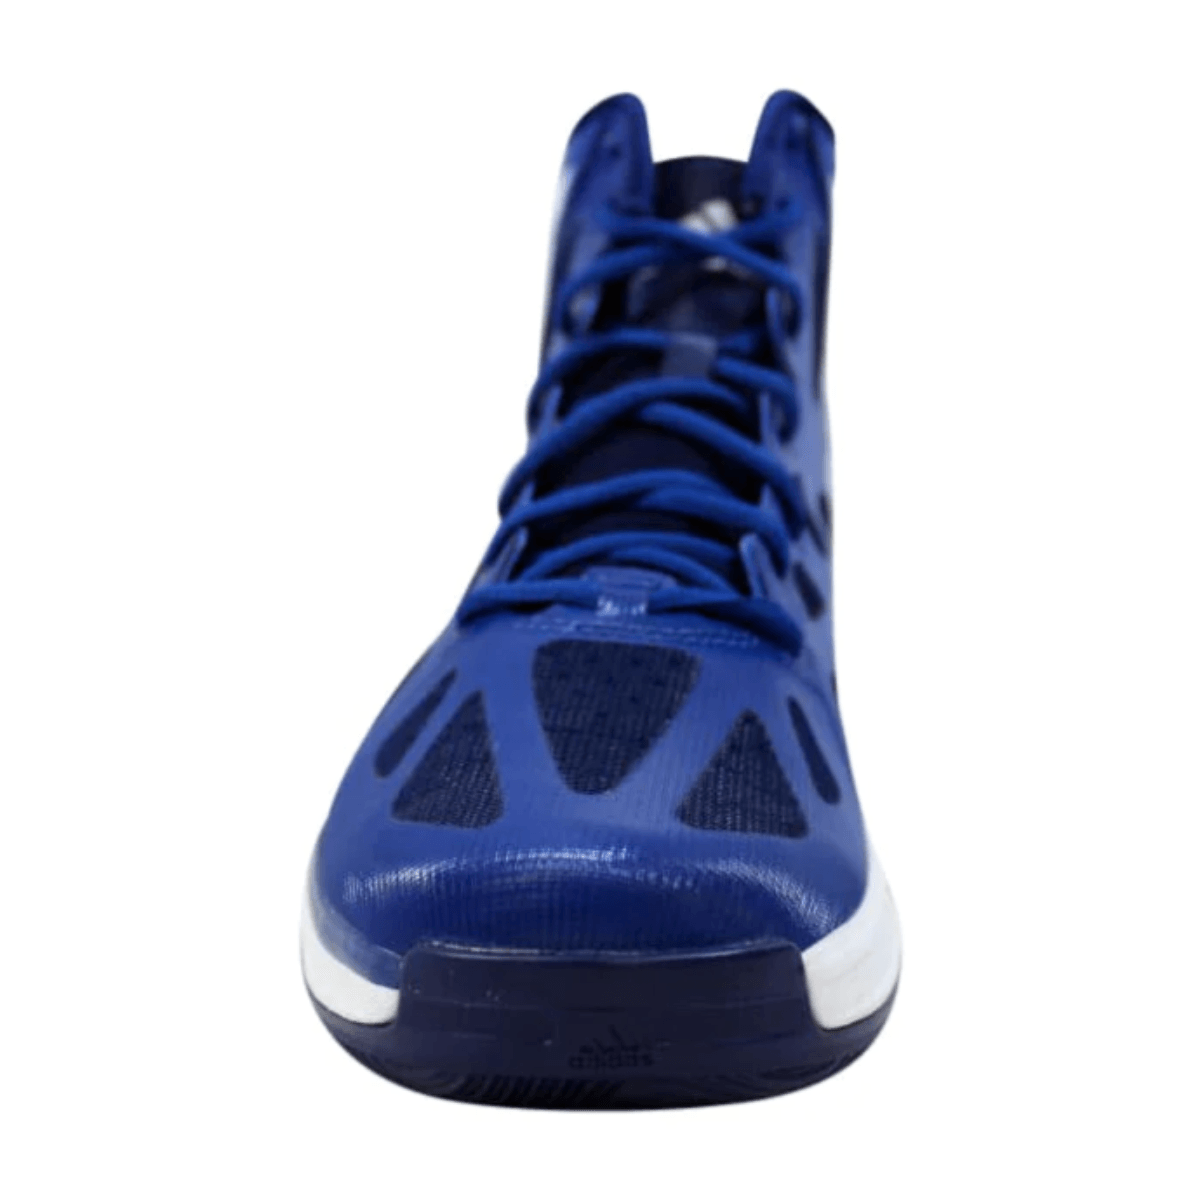 adidas Basketball Shoe Men's - Als.com